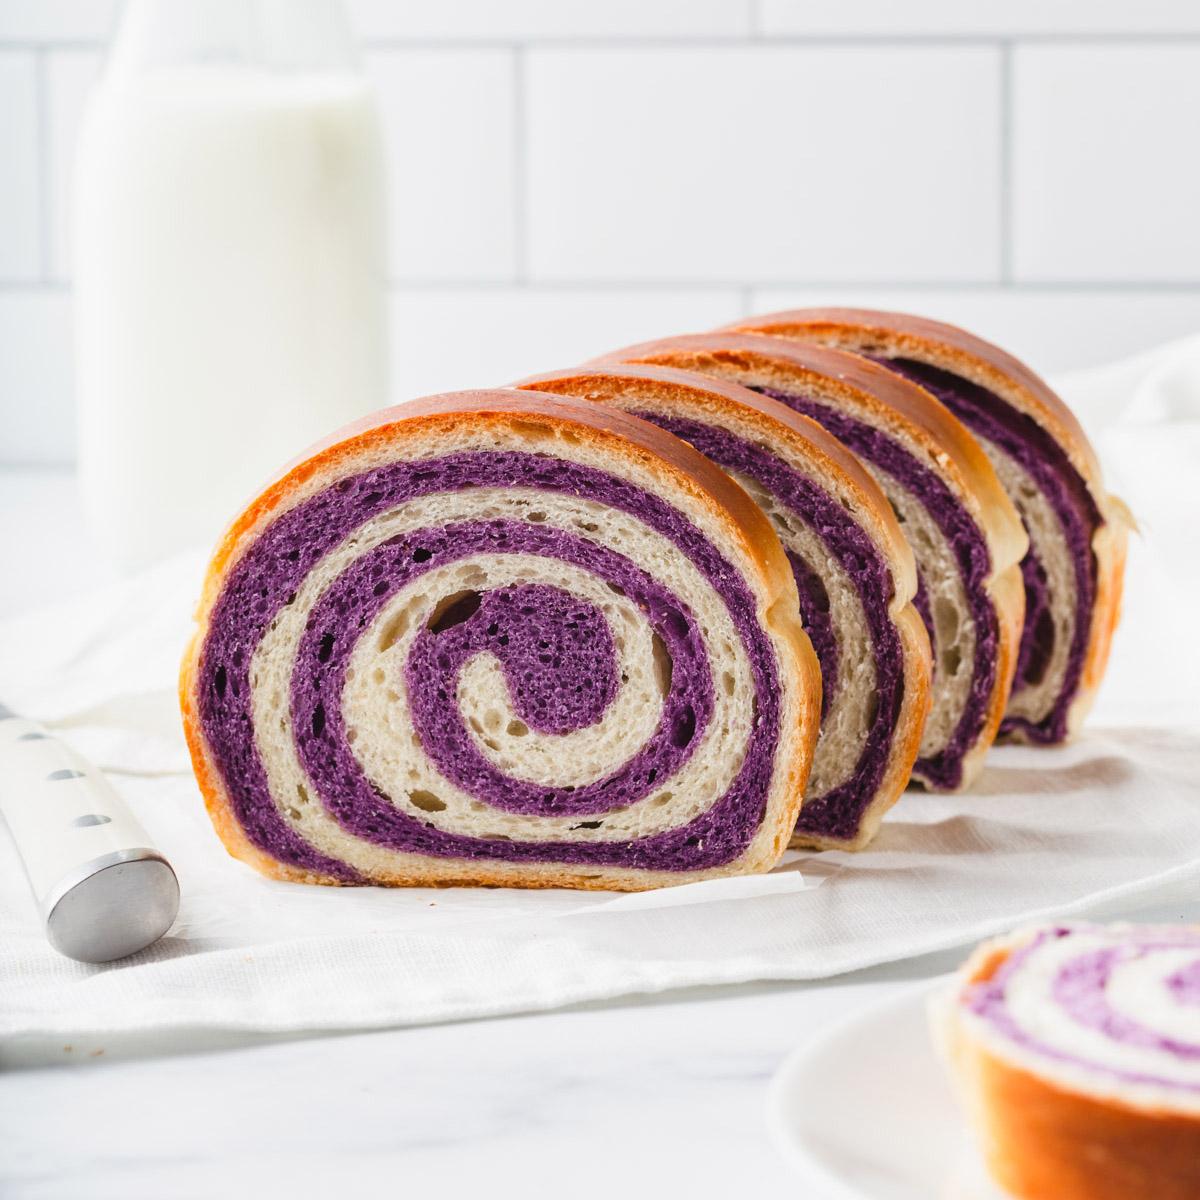 Ube Swirl Milk Bread (Purple Sweet Potato Swirl Bread) – Takes Two Eggs